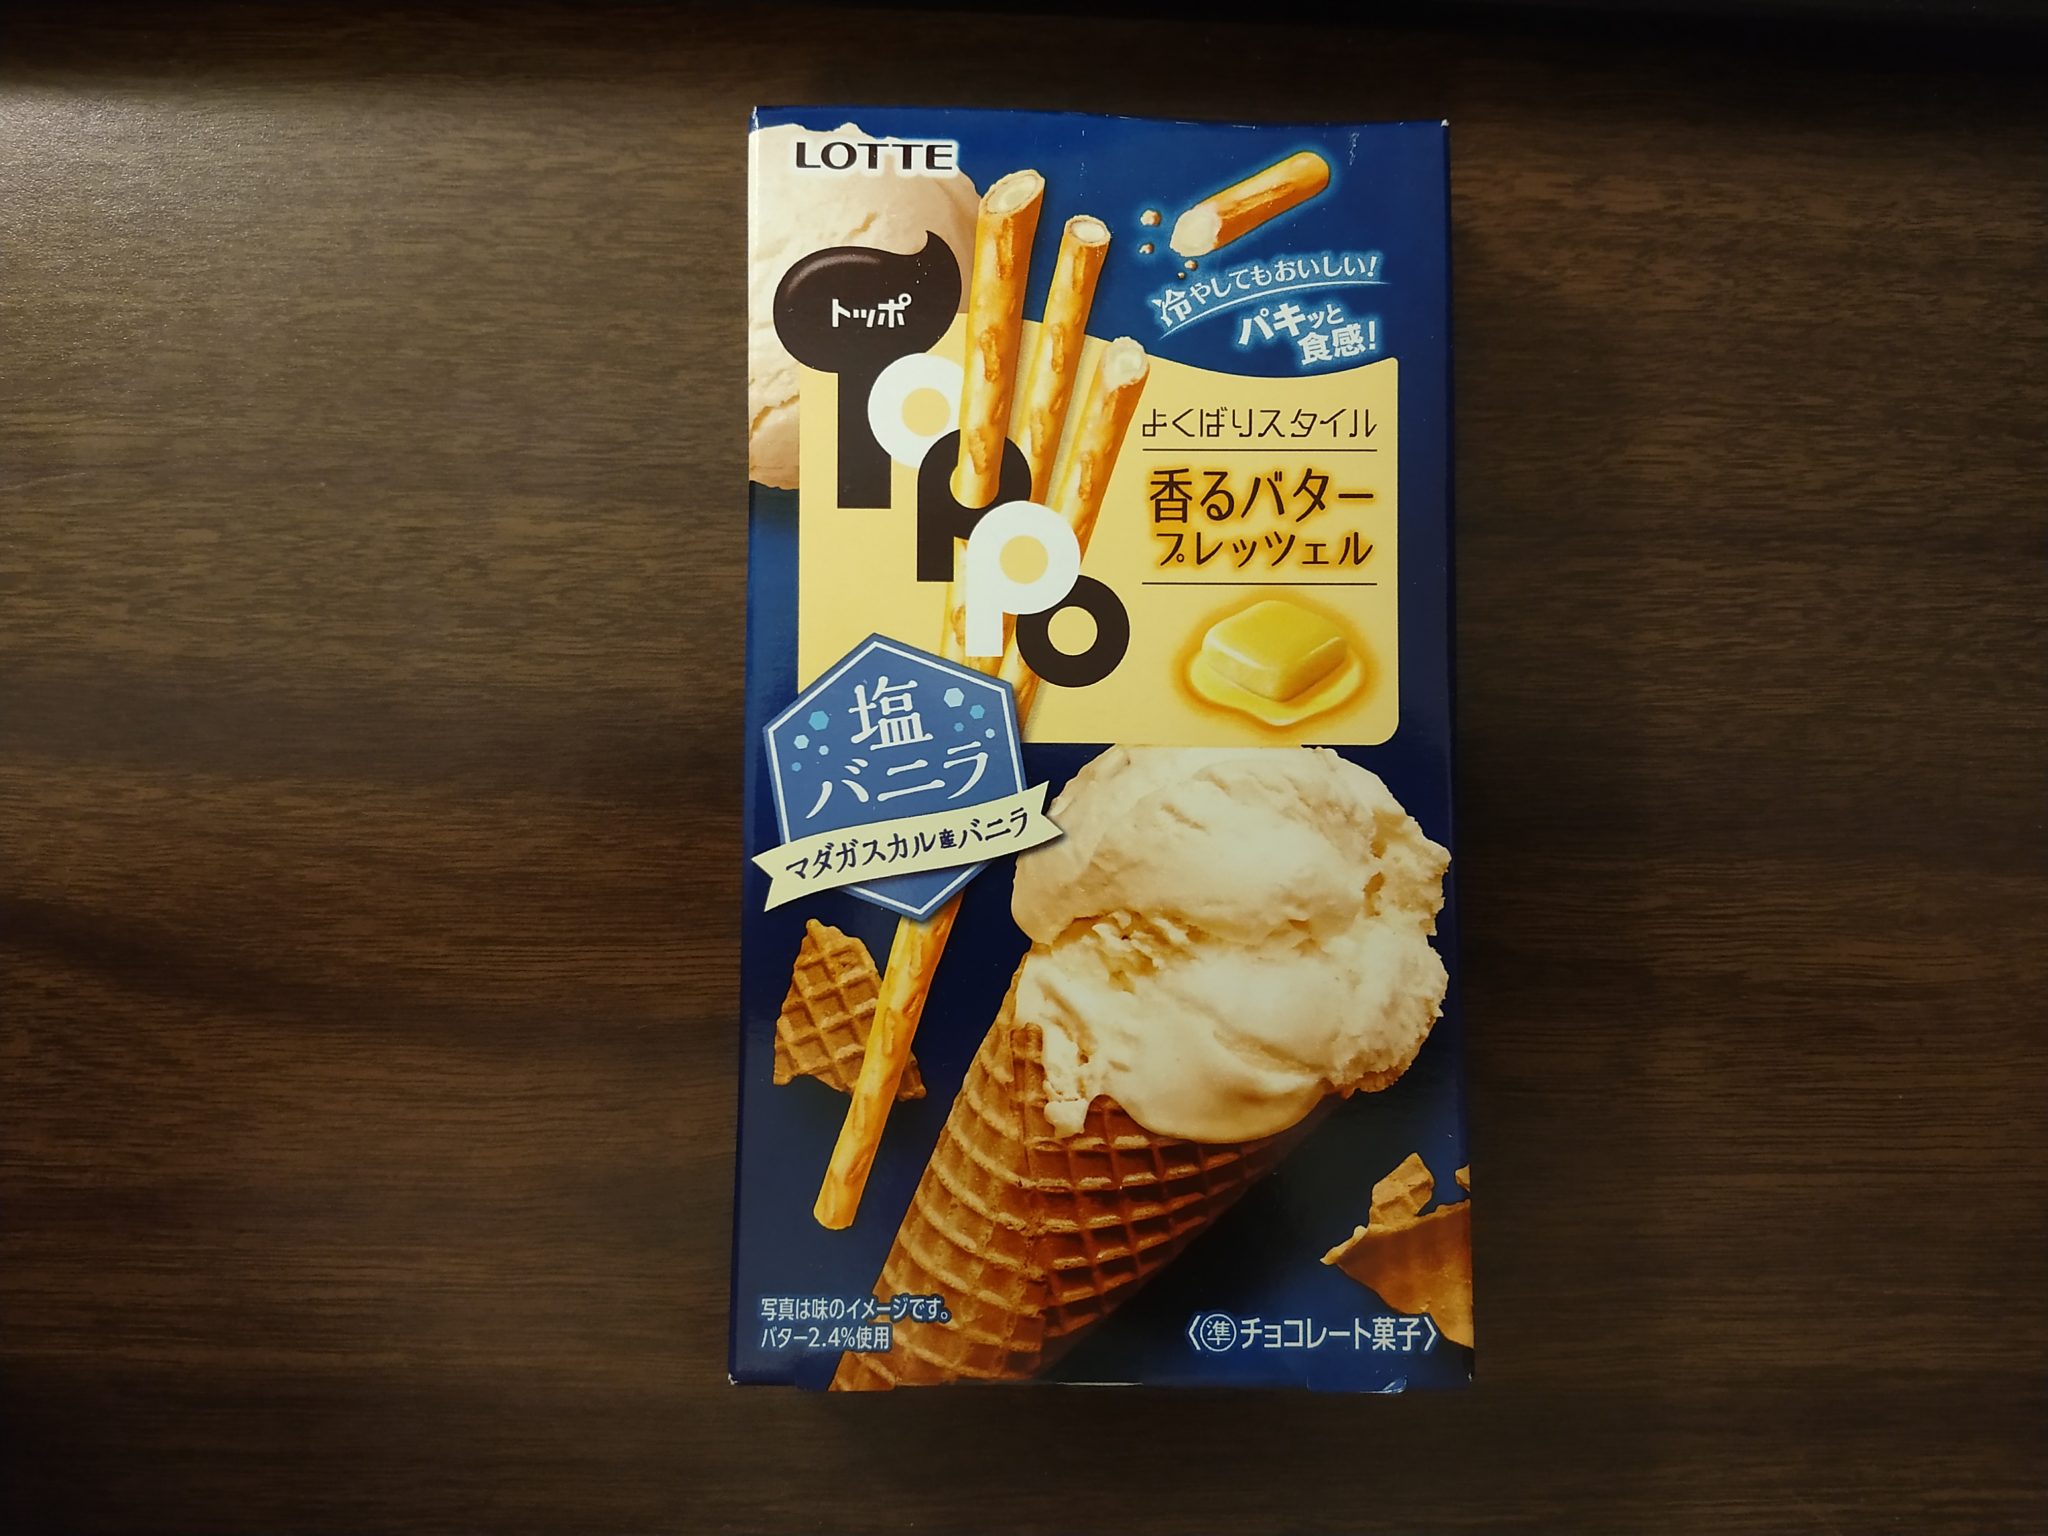 Toppo – Salty Vanilla Ice Cream